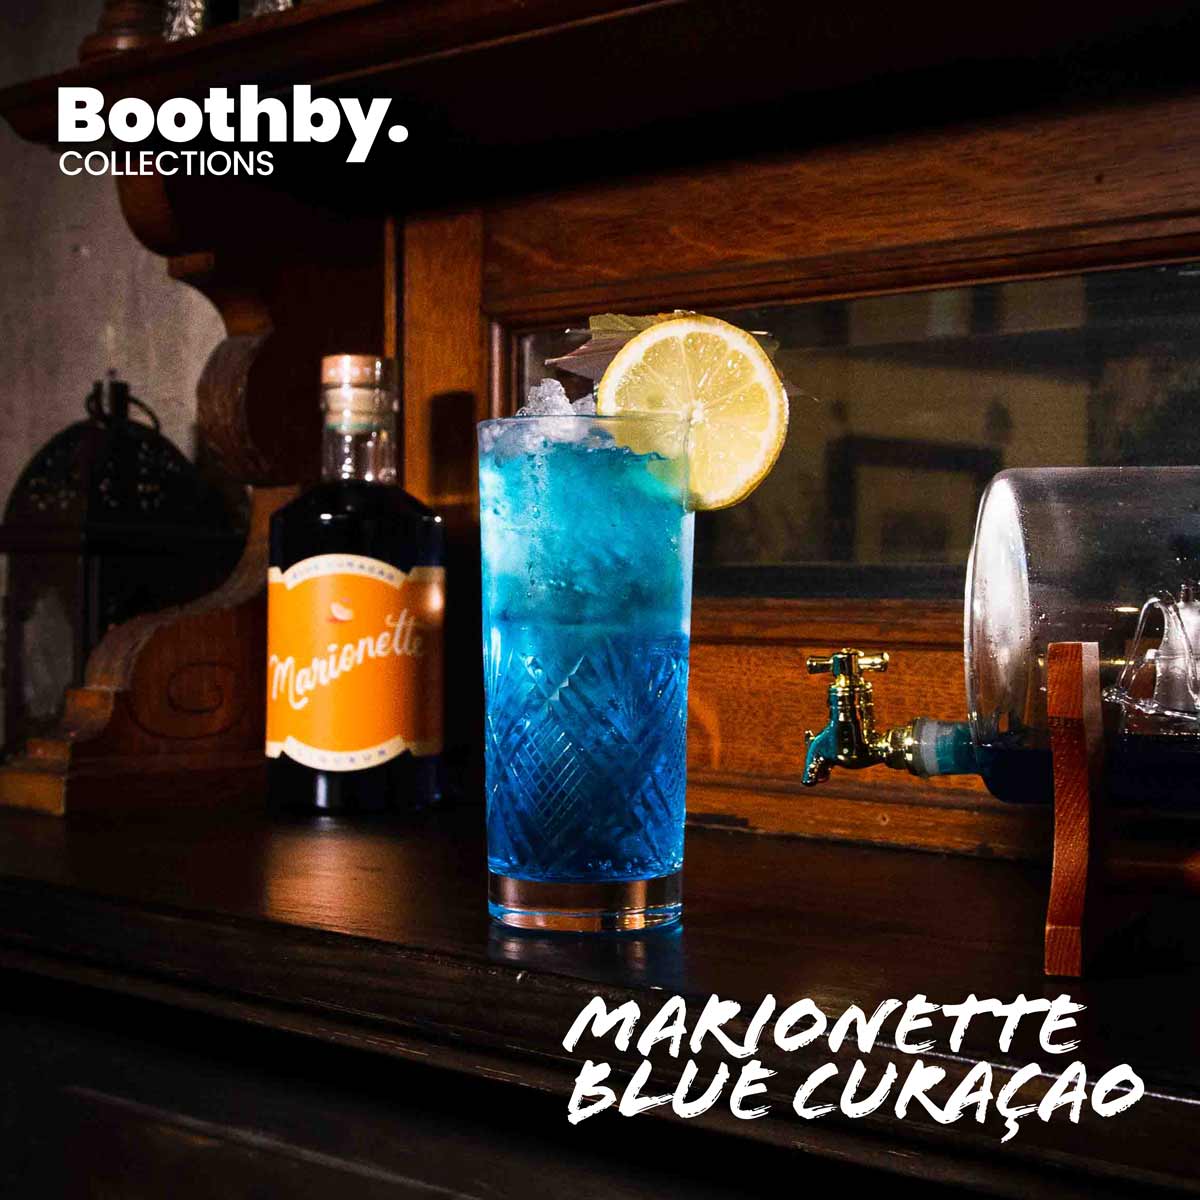 Marionette Blue Curaçao is bringing back blue drinks